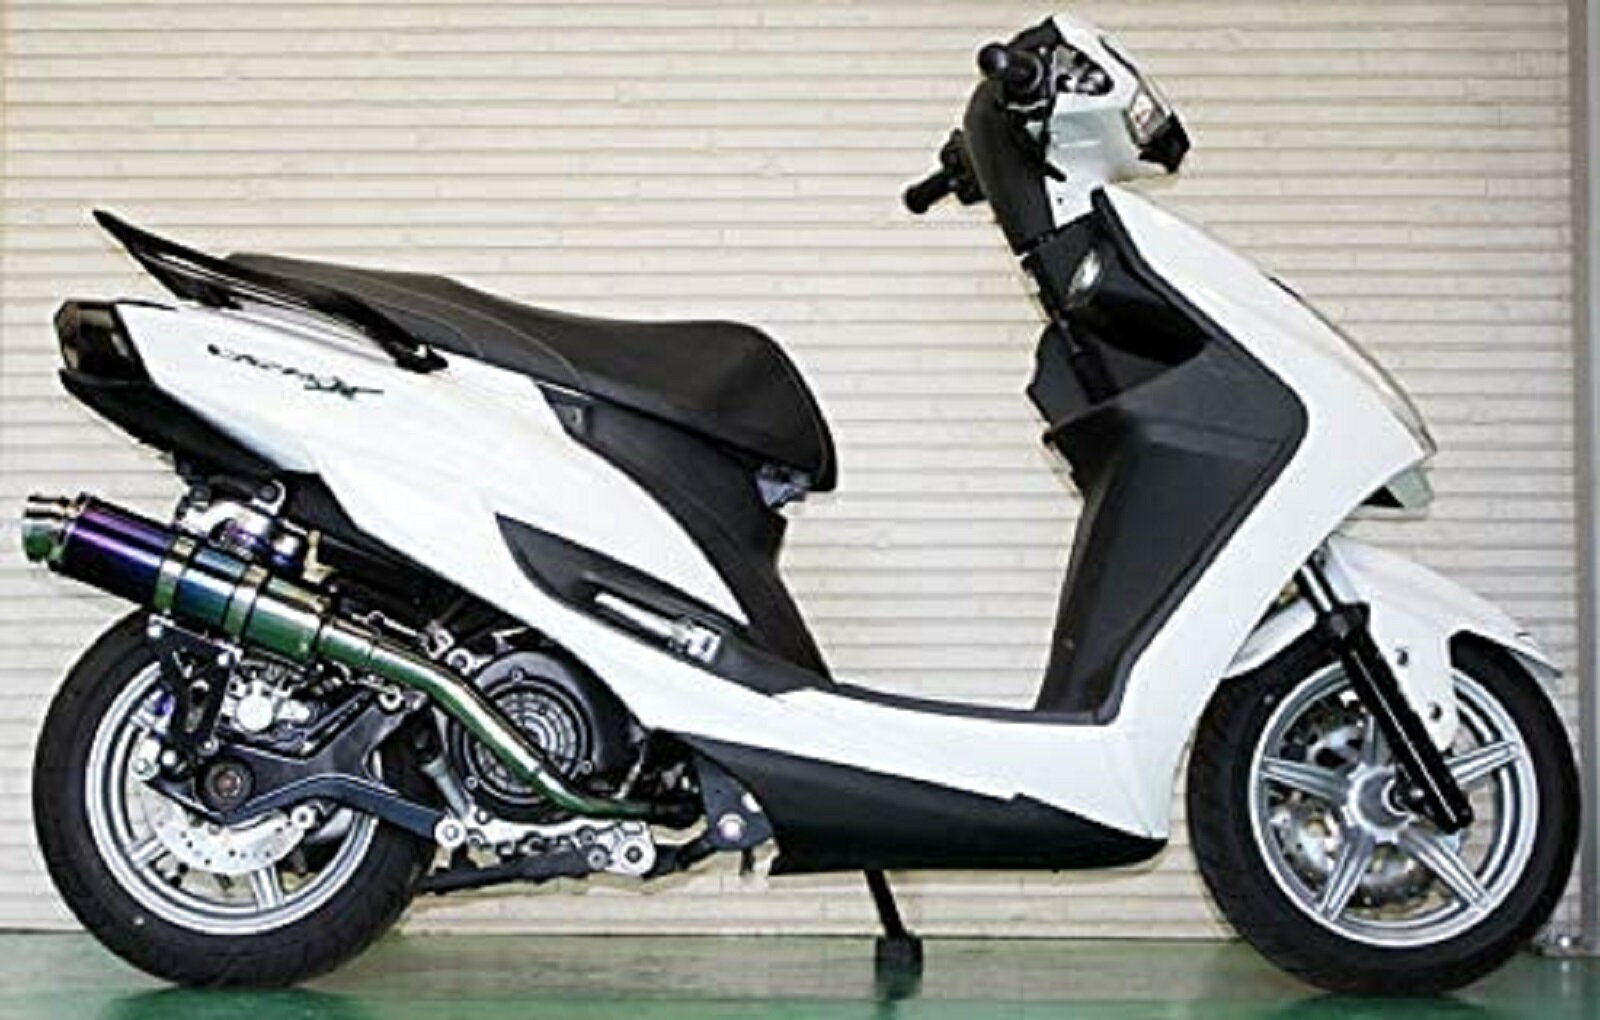 シグナスX バイクマフラー 4型 5型 EBJ-SEA5J 2BJ-SED8J 2016年～2018年モデル対応 フォーゼ チタン ブルーカラー マフラー Realspeed (リアルスピード) ヤマハ バイク用品 バイク用 バイクパーツ フルエキ フルエキゾースト カスタム パーツ ドレスアップ 交換 社外品